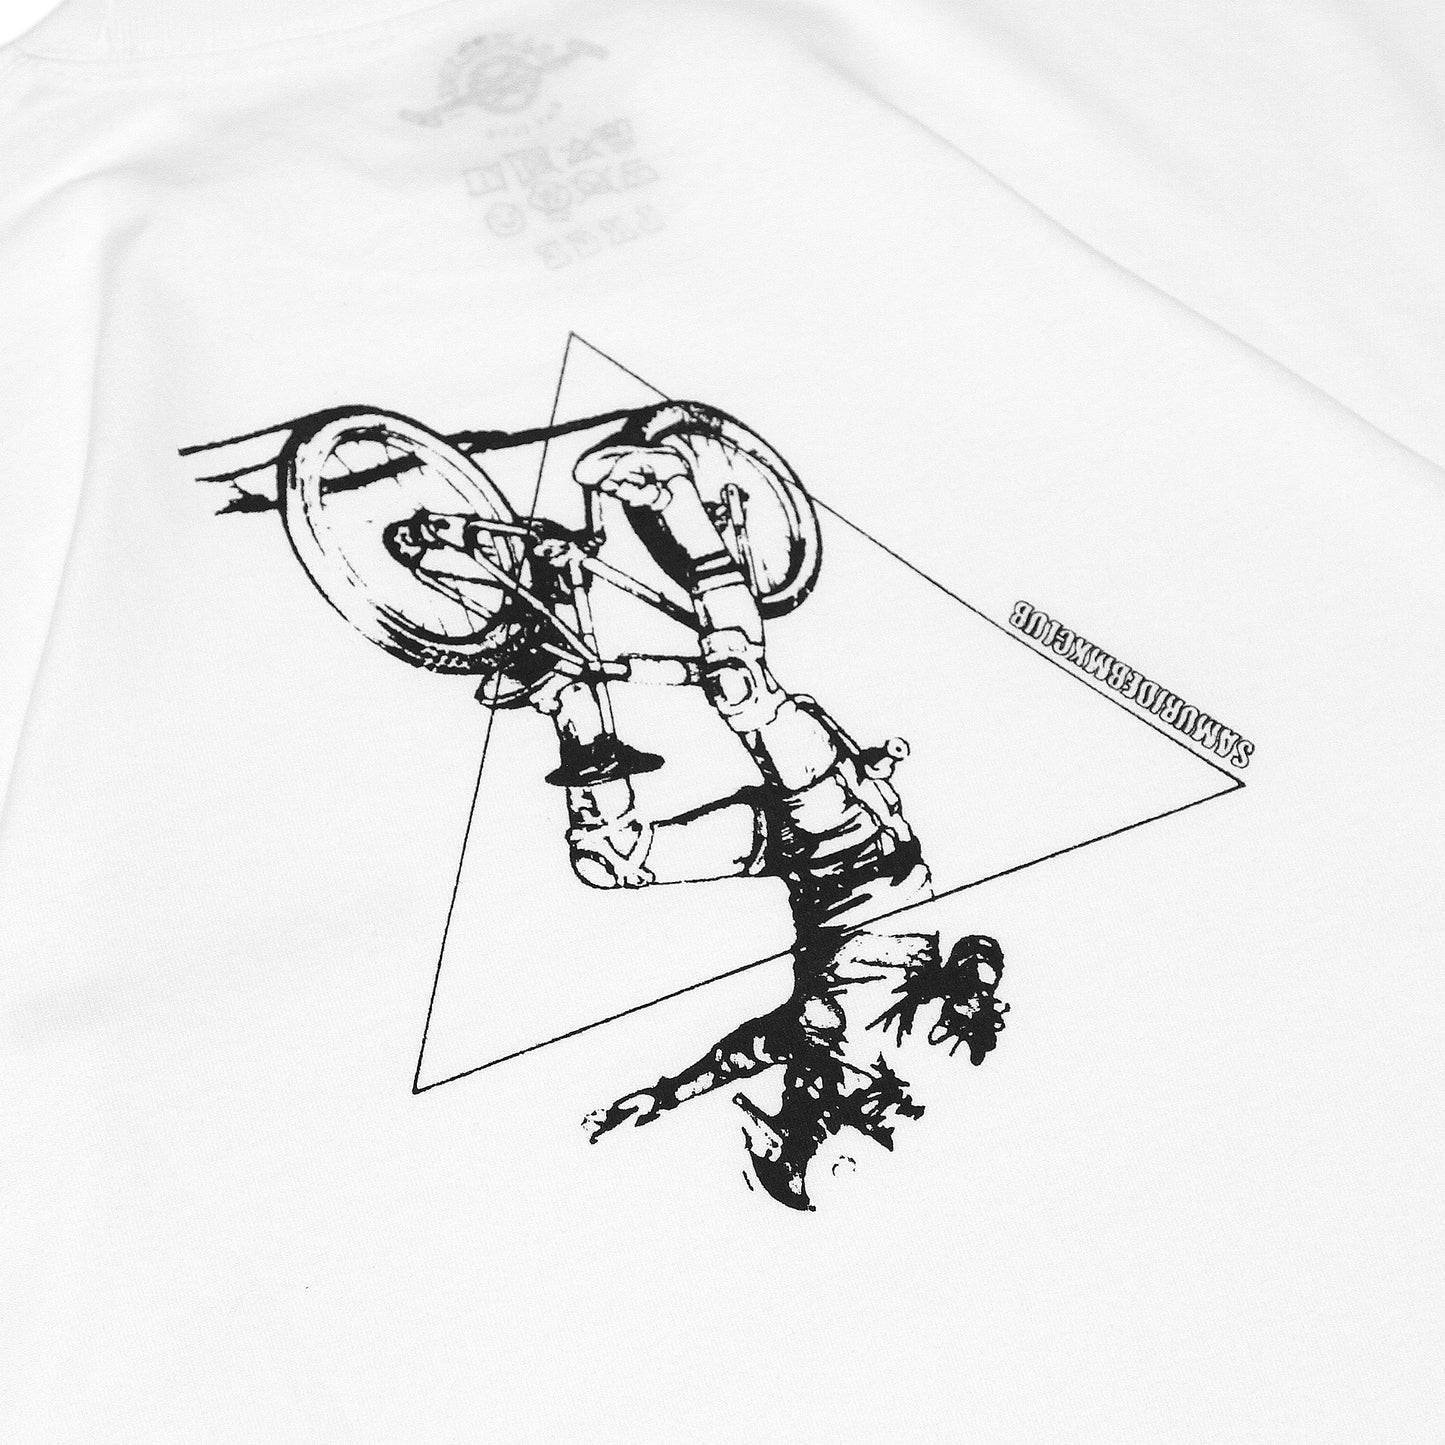 SAMURIDE - SMRD Back Ride T-Shirt/Black & White